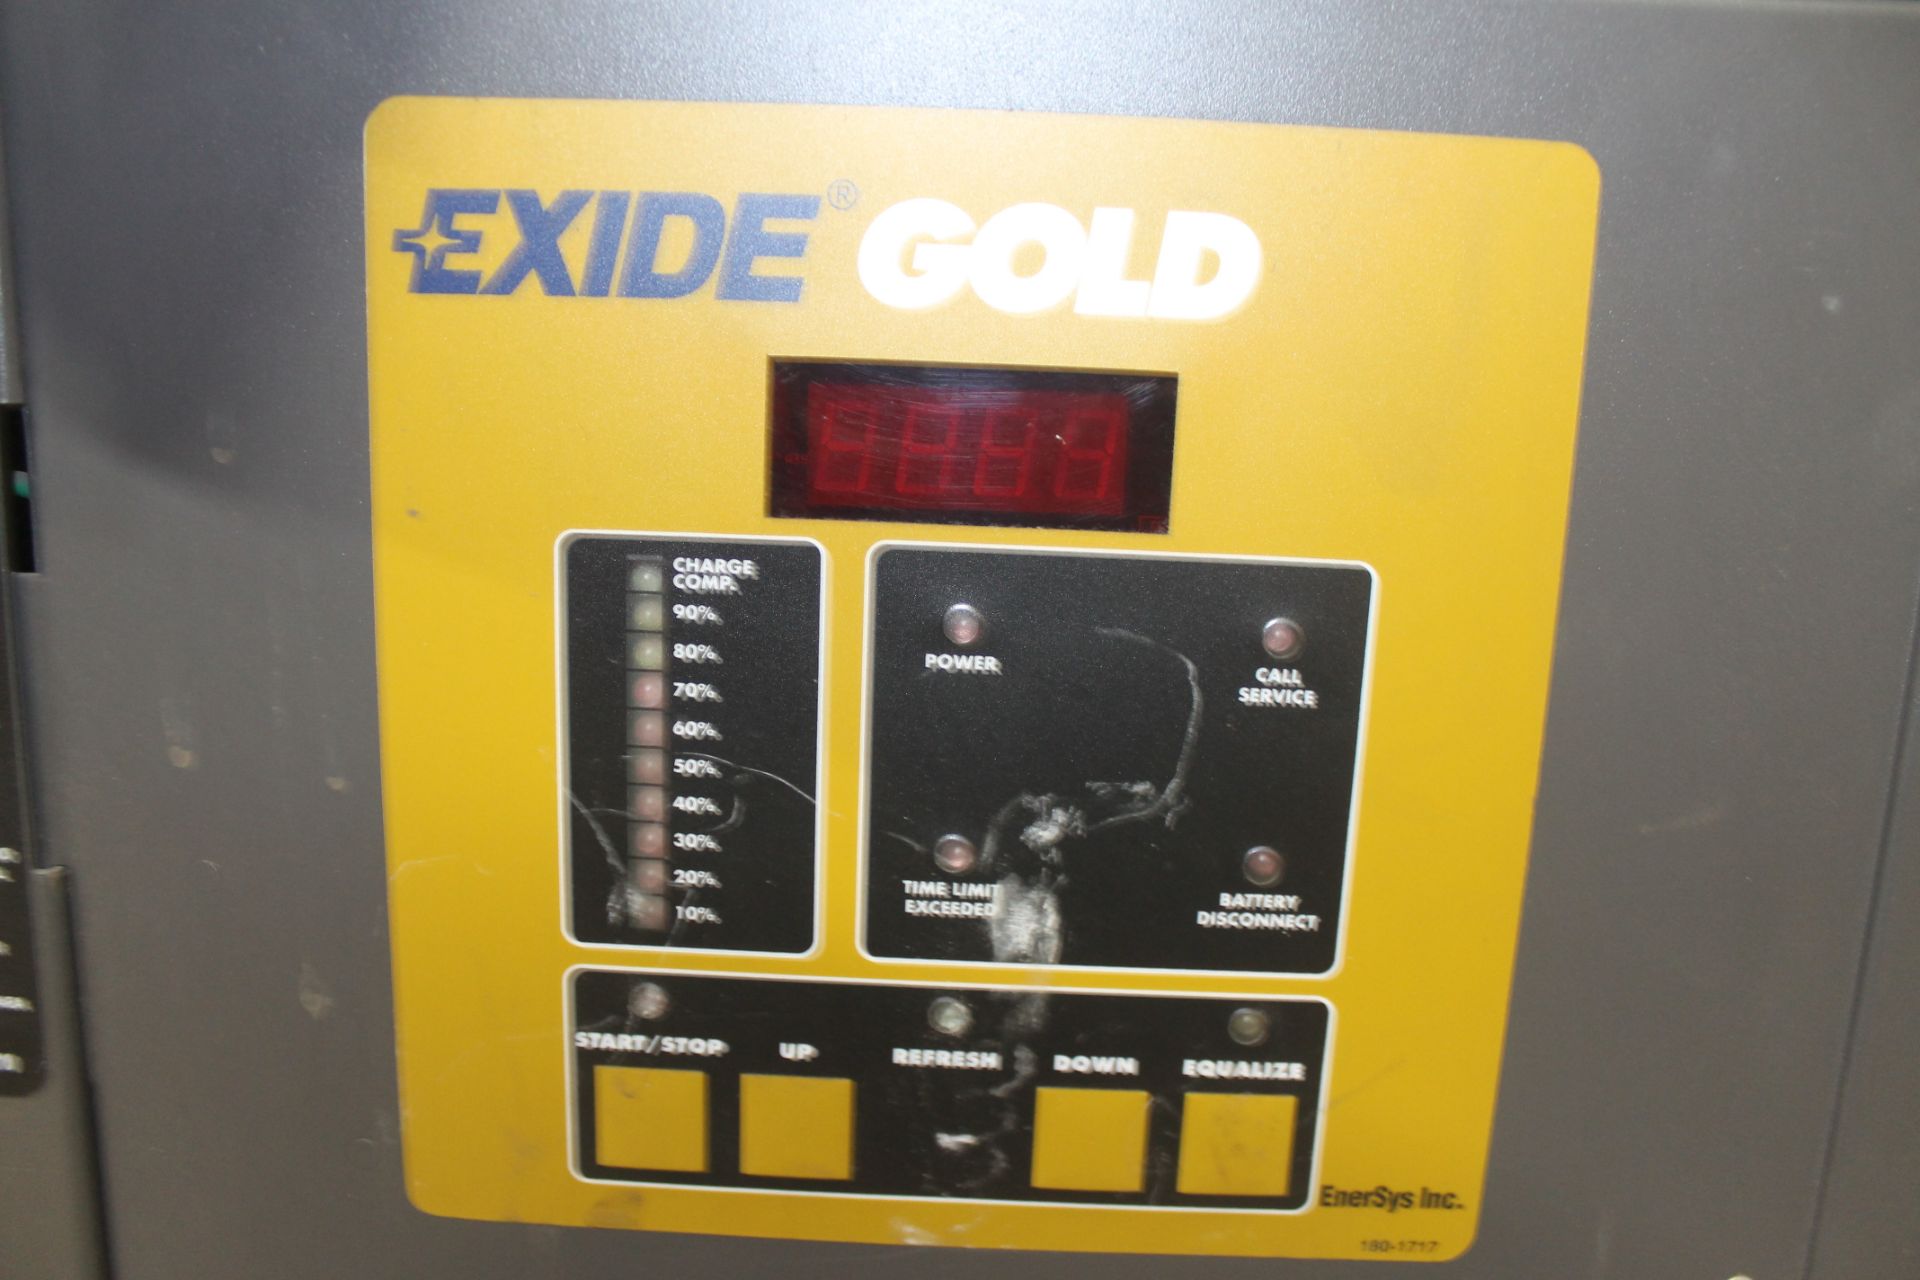 EXIDE GOLD 24V ELECTRIC FORKLIFT BATTERY CHARGER, - Image 2 of 4